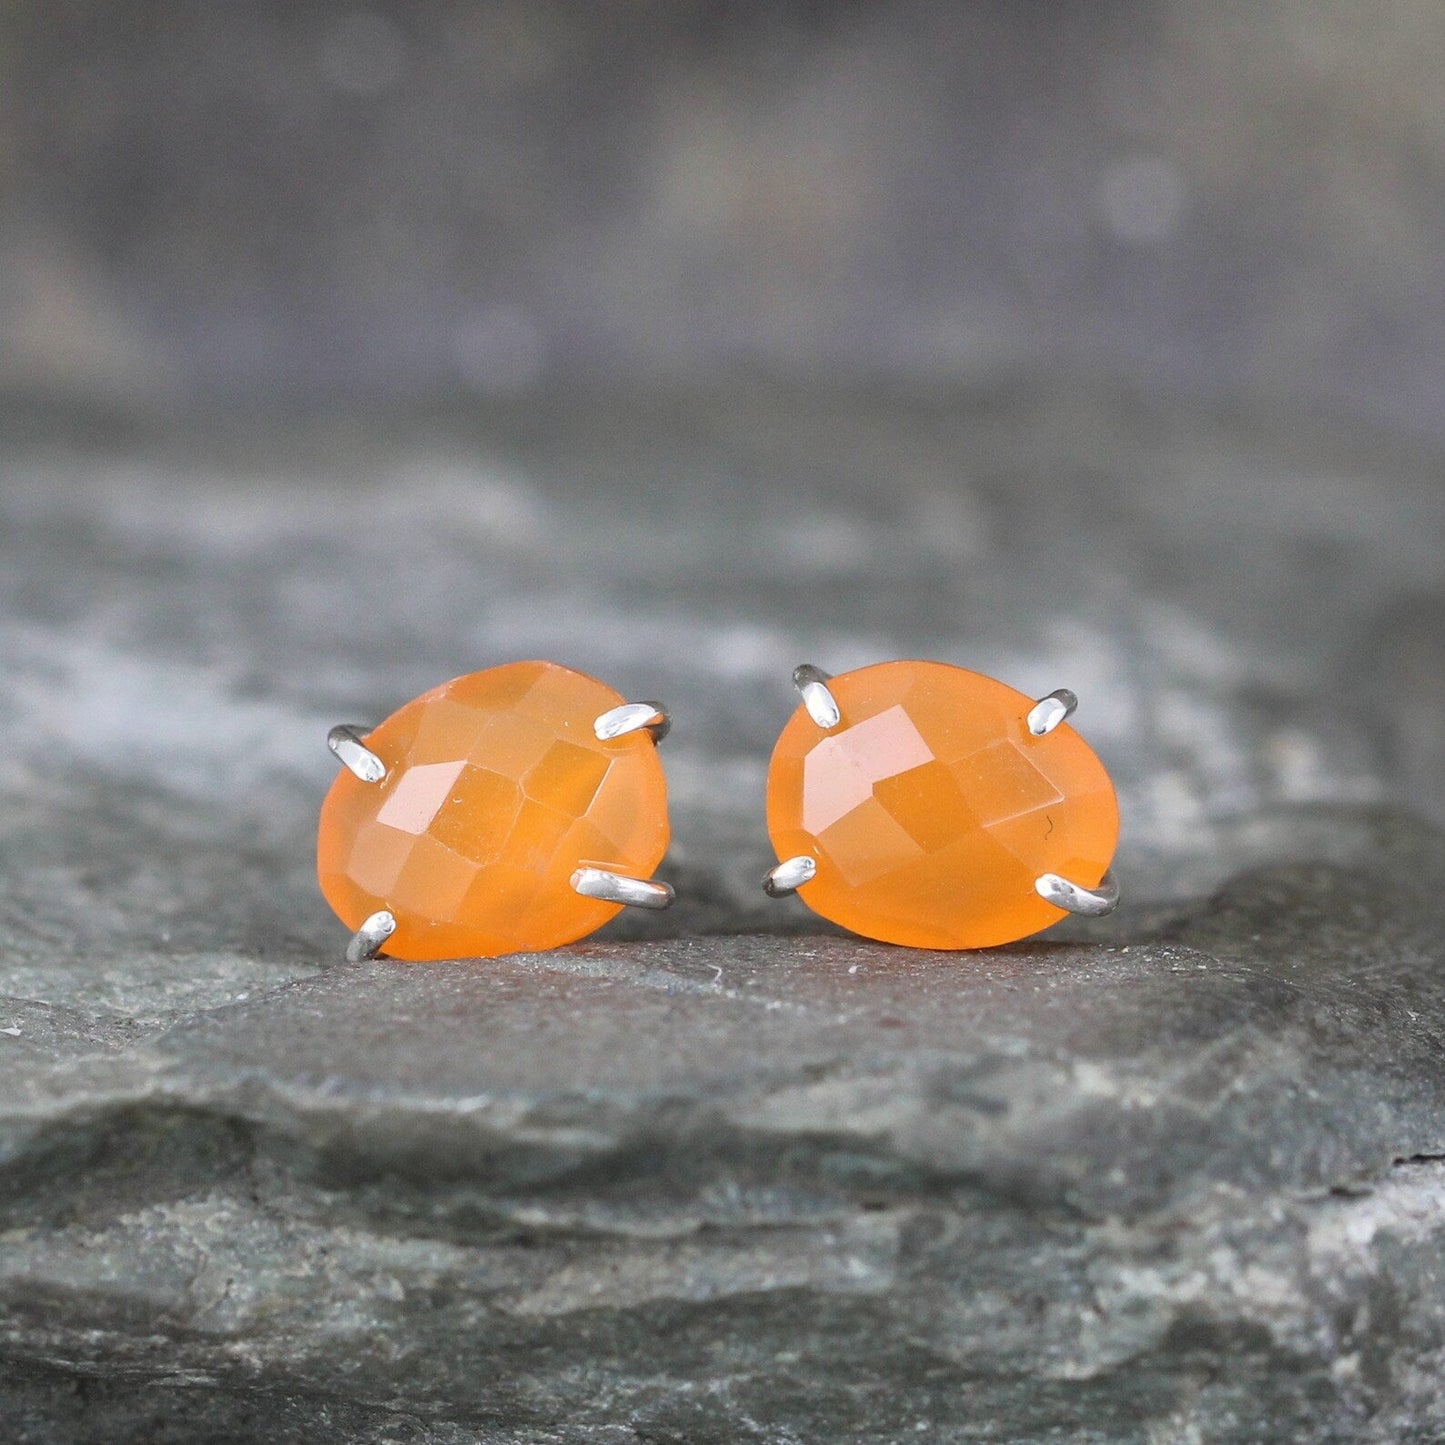 Carnelian Earrings - Sterling Silver Stud Earring - Rose Cut Gemstones - Orange Tone Earrings - Living Coral Color Earrings